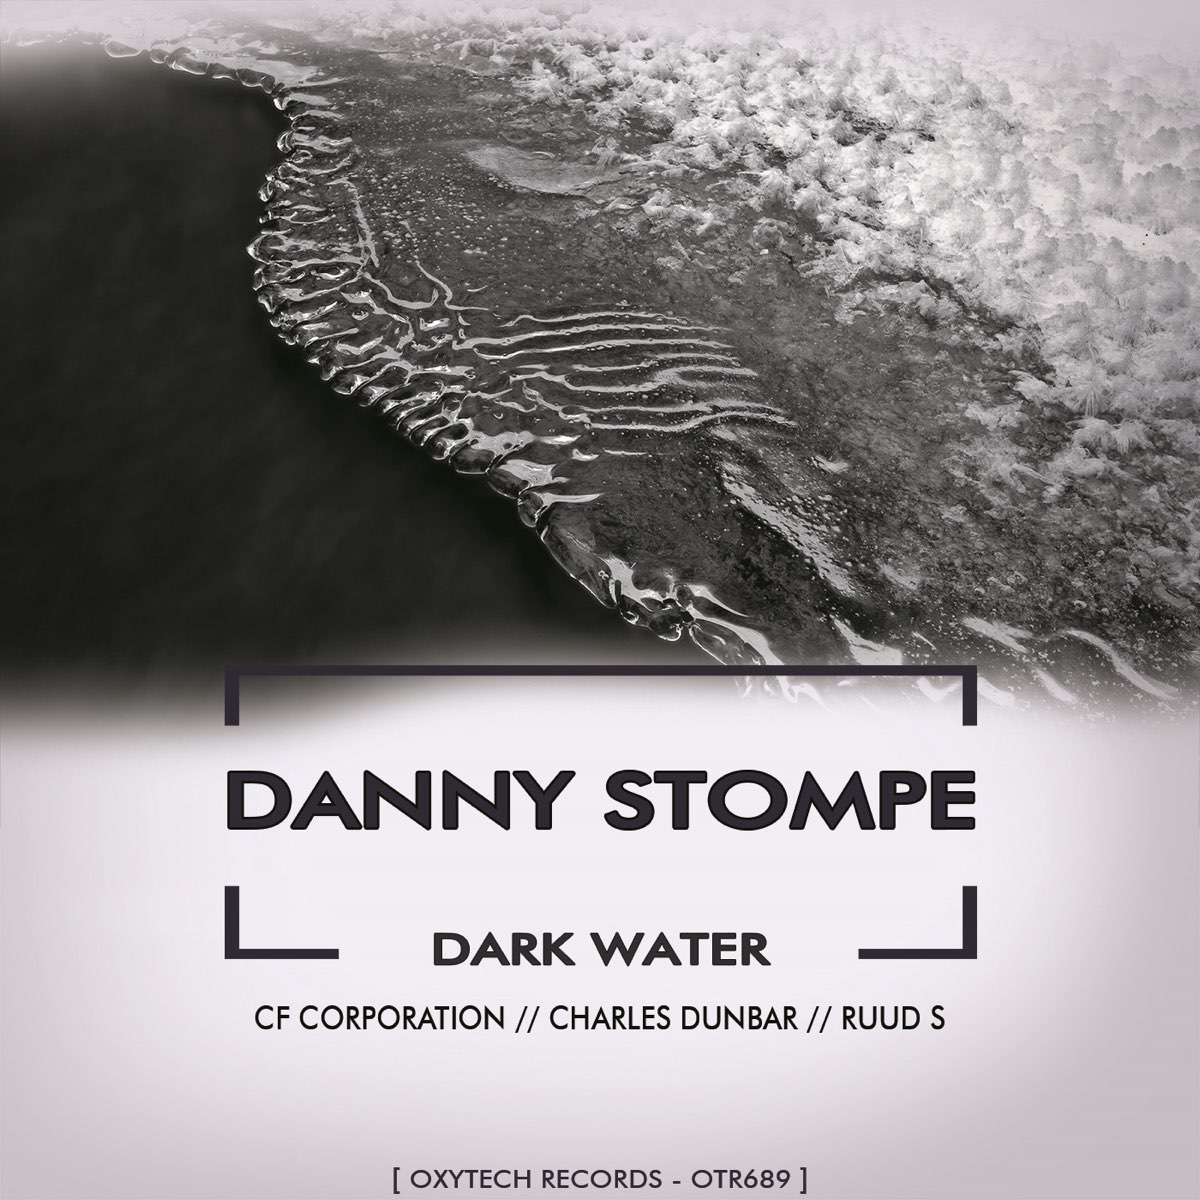 Слушать песни темная вода. Темная вода песня. Темные воды музыка. Dark Water records. Альбом песни темная вода.